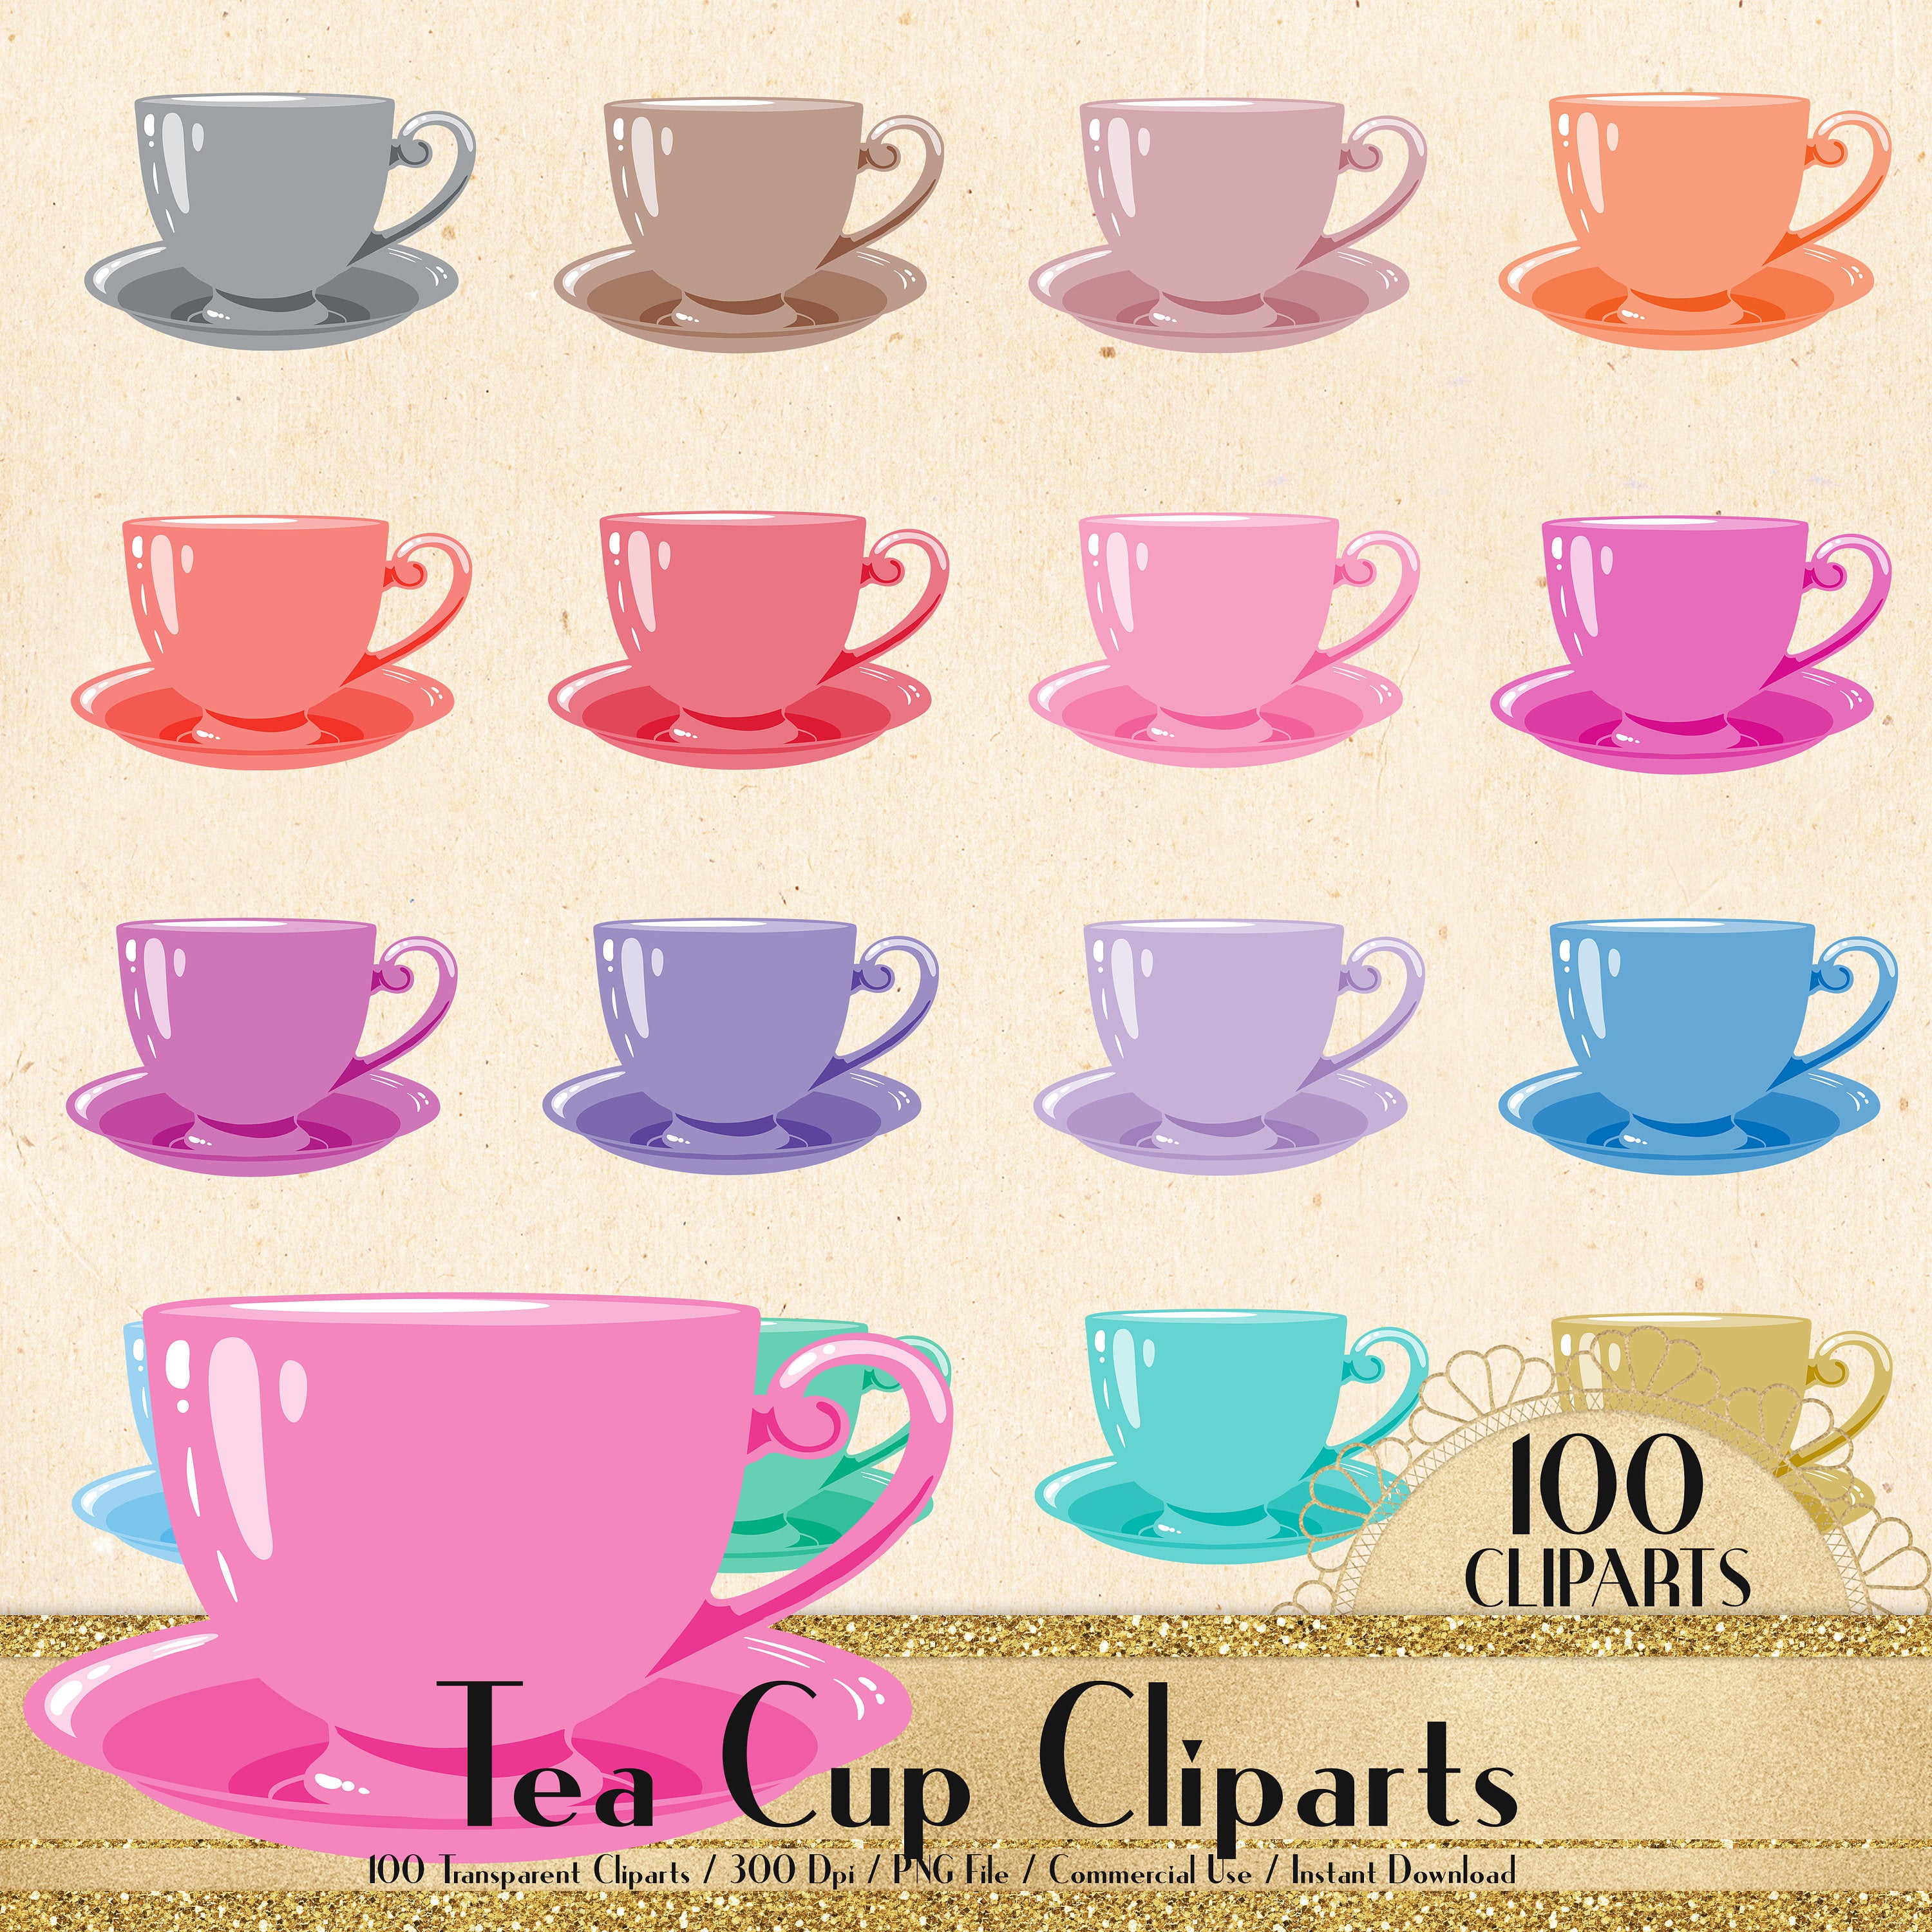 100 Tea Cup Cliparts, Garden Party Cliparts, Lovely Clipart, 100 PNG Clipart, Planner Clipart, Valentine Clip Arts, Tea Time, Tea Party